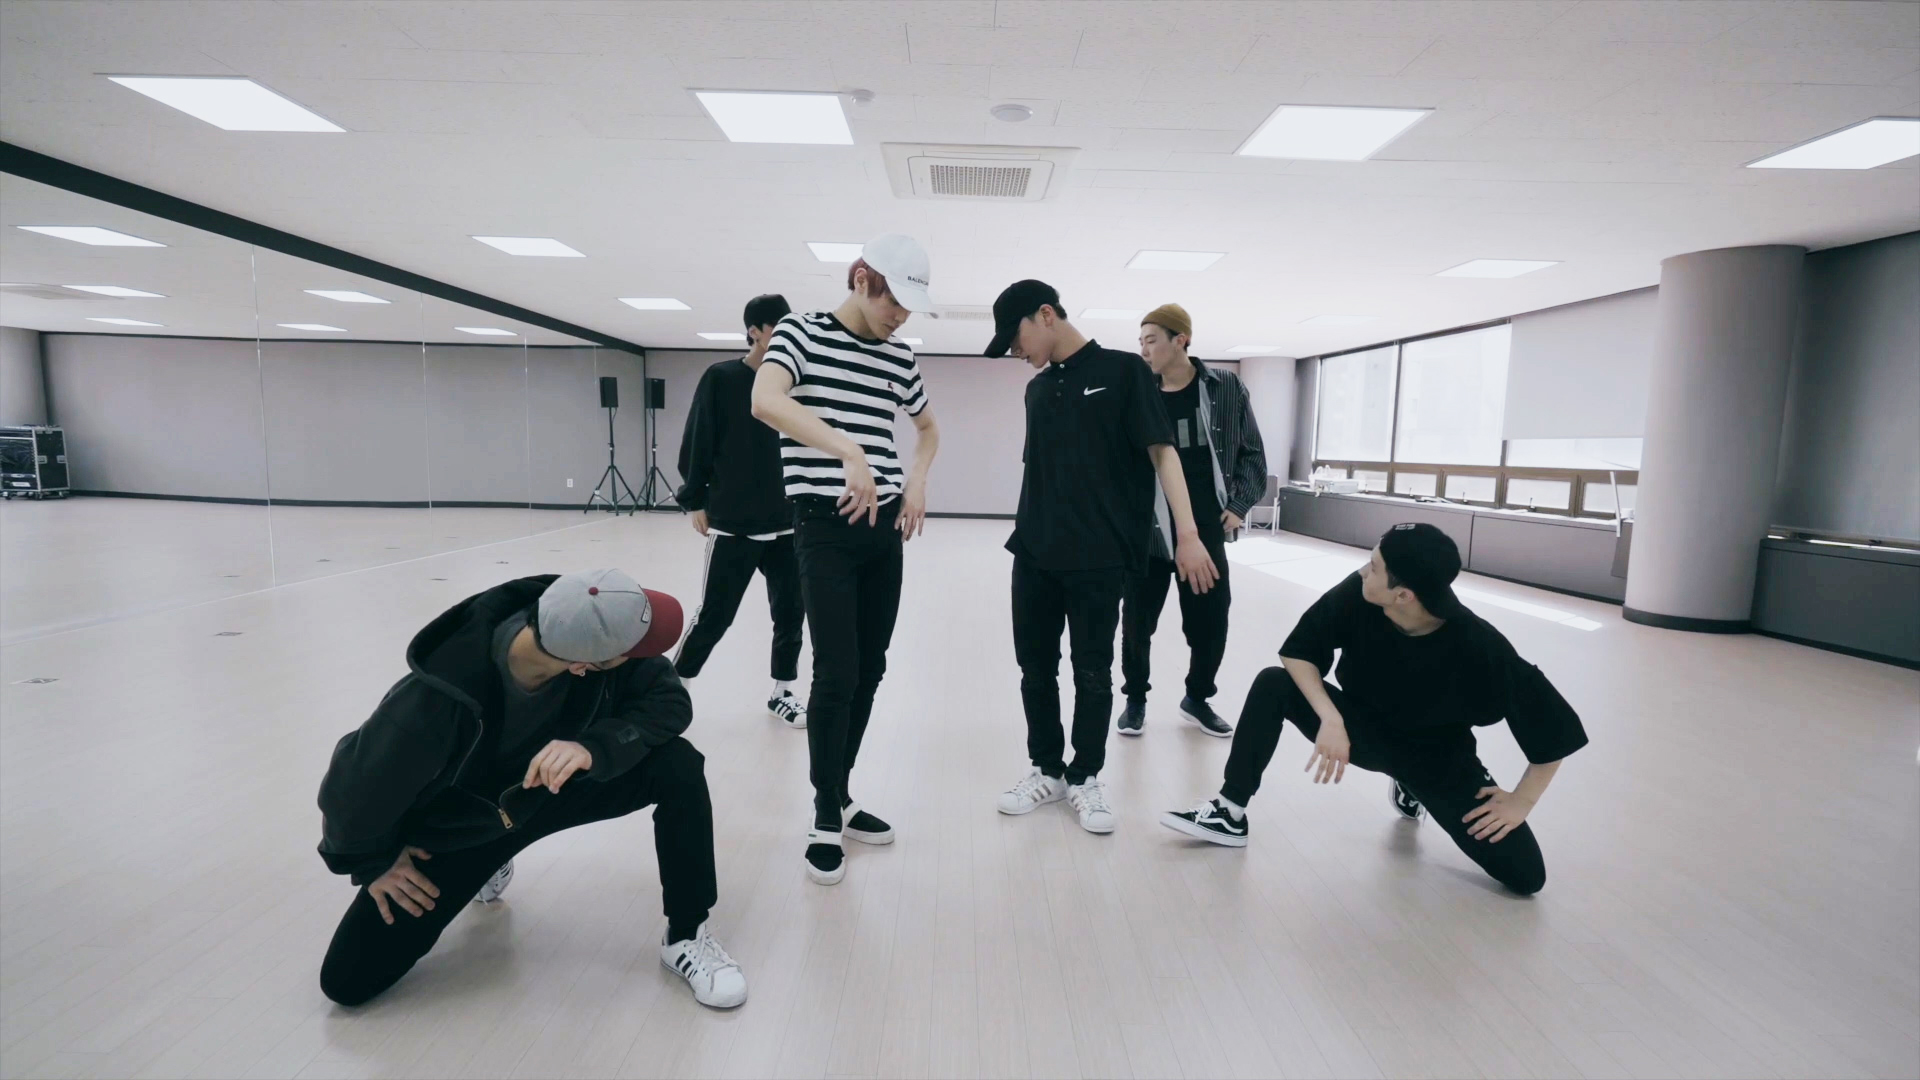 NCT U 엔시티 유 'Baby Don't Stop' Dance Practice